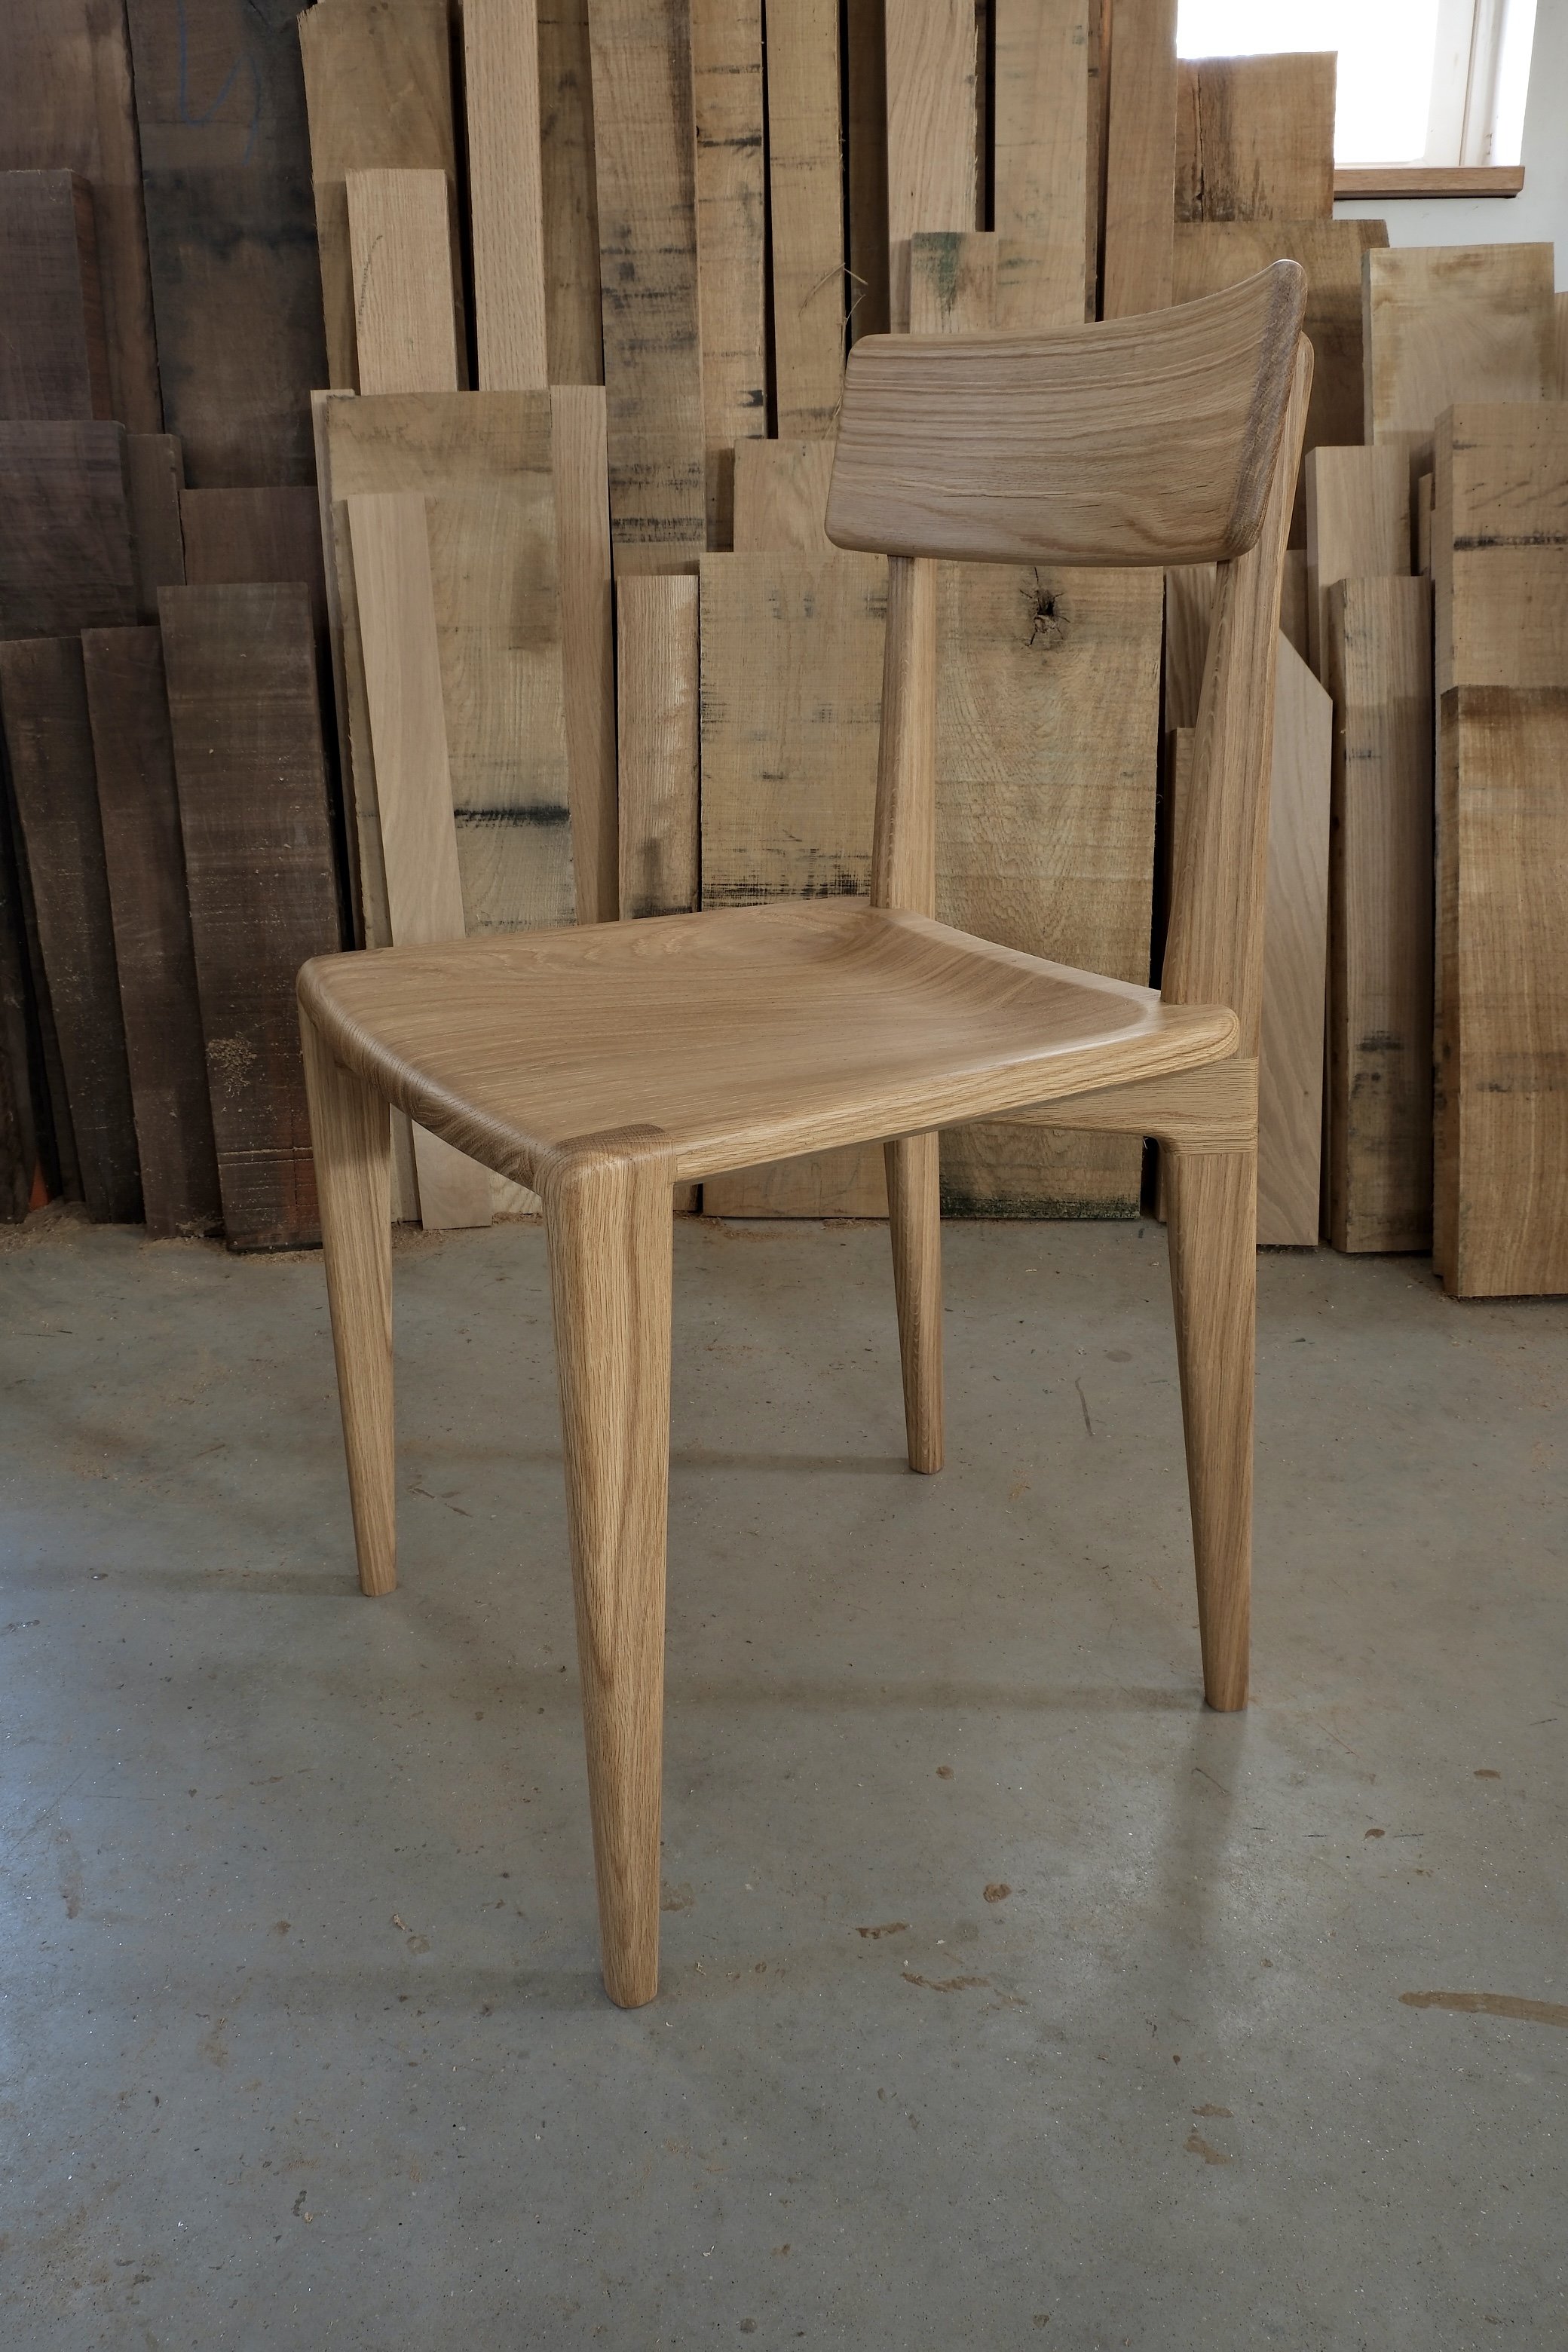 durham chair white oak cutoff background 3:4 front view.jpg